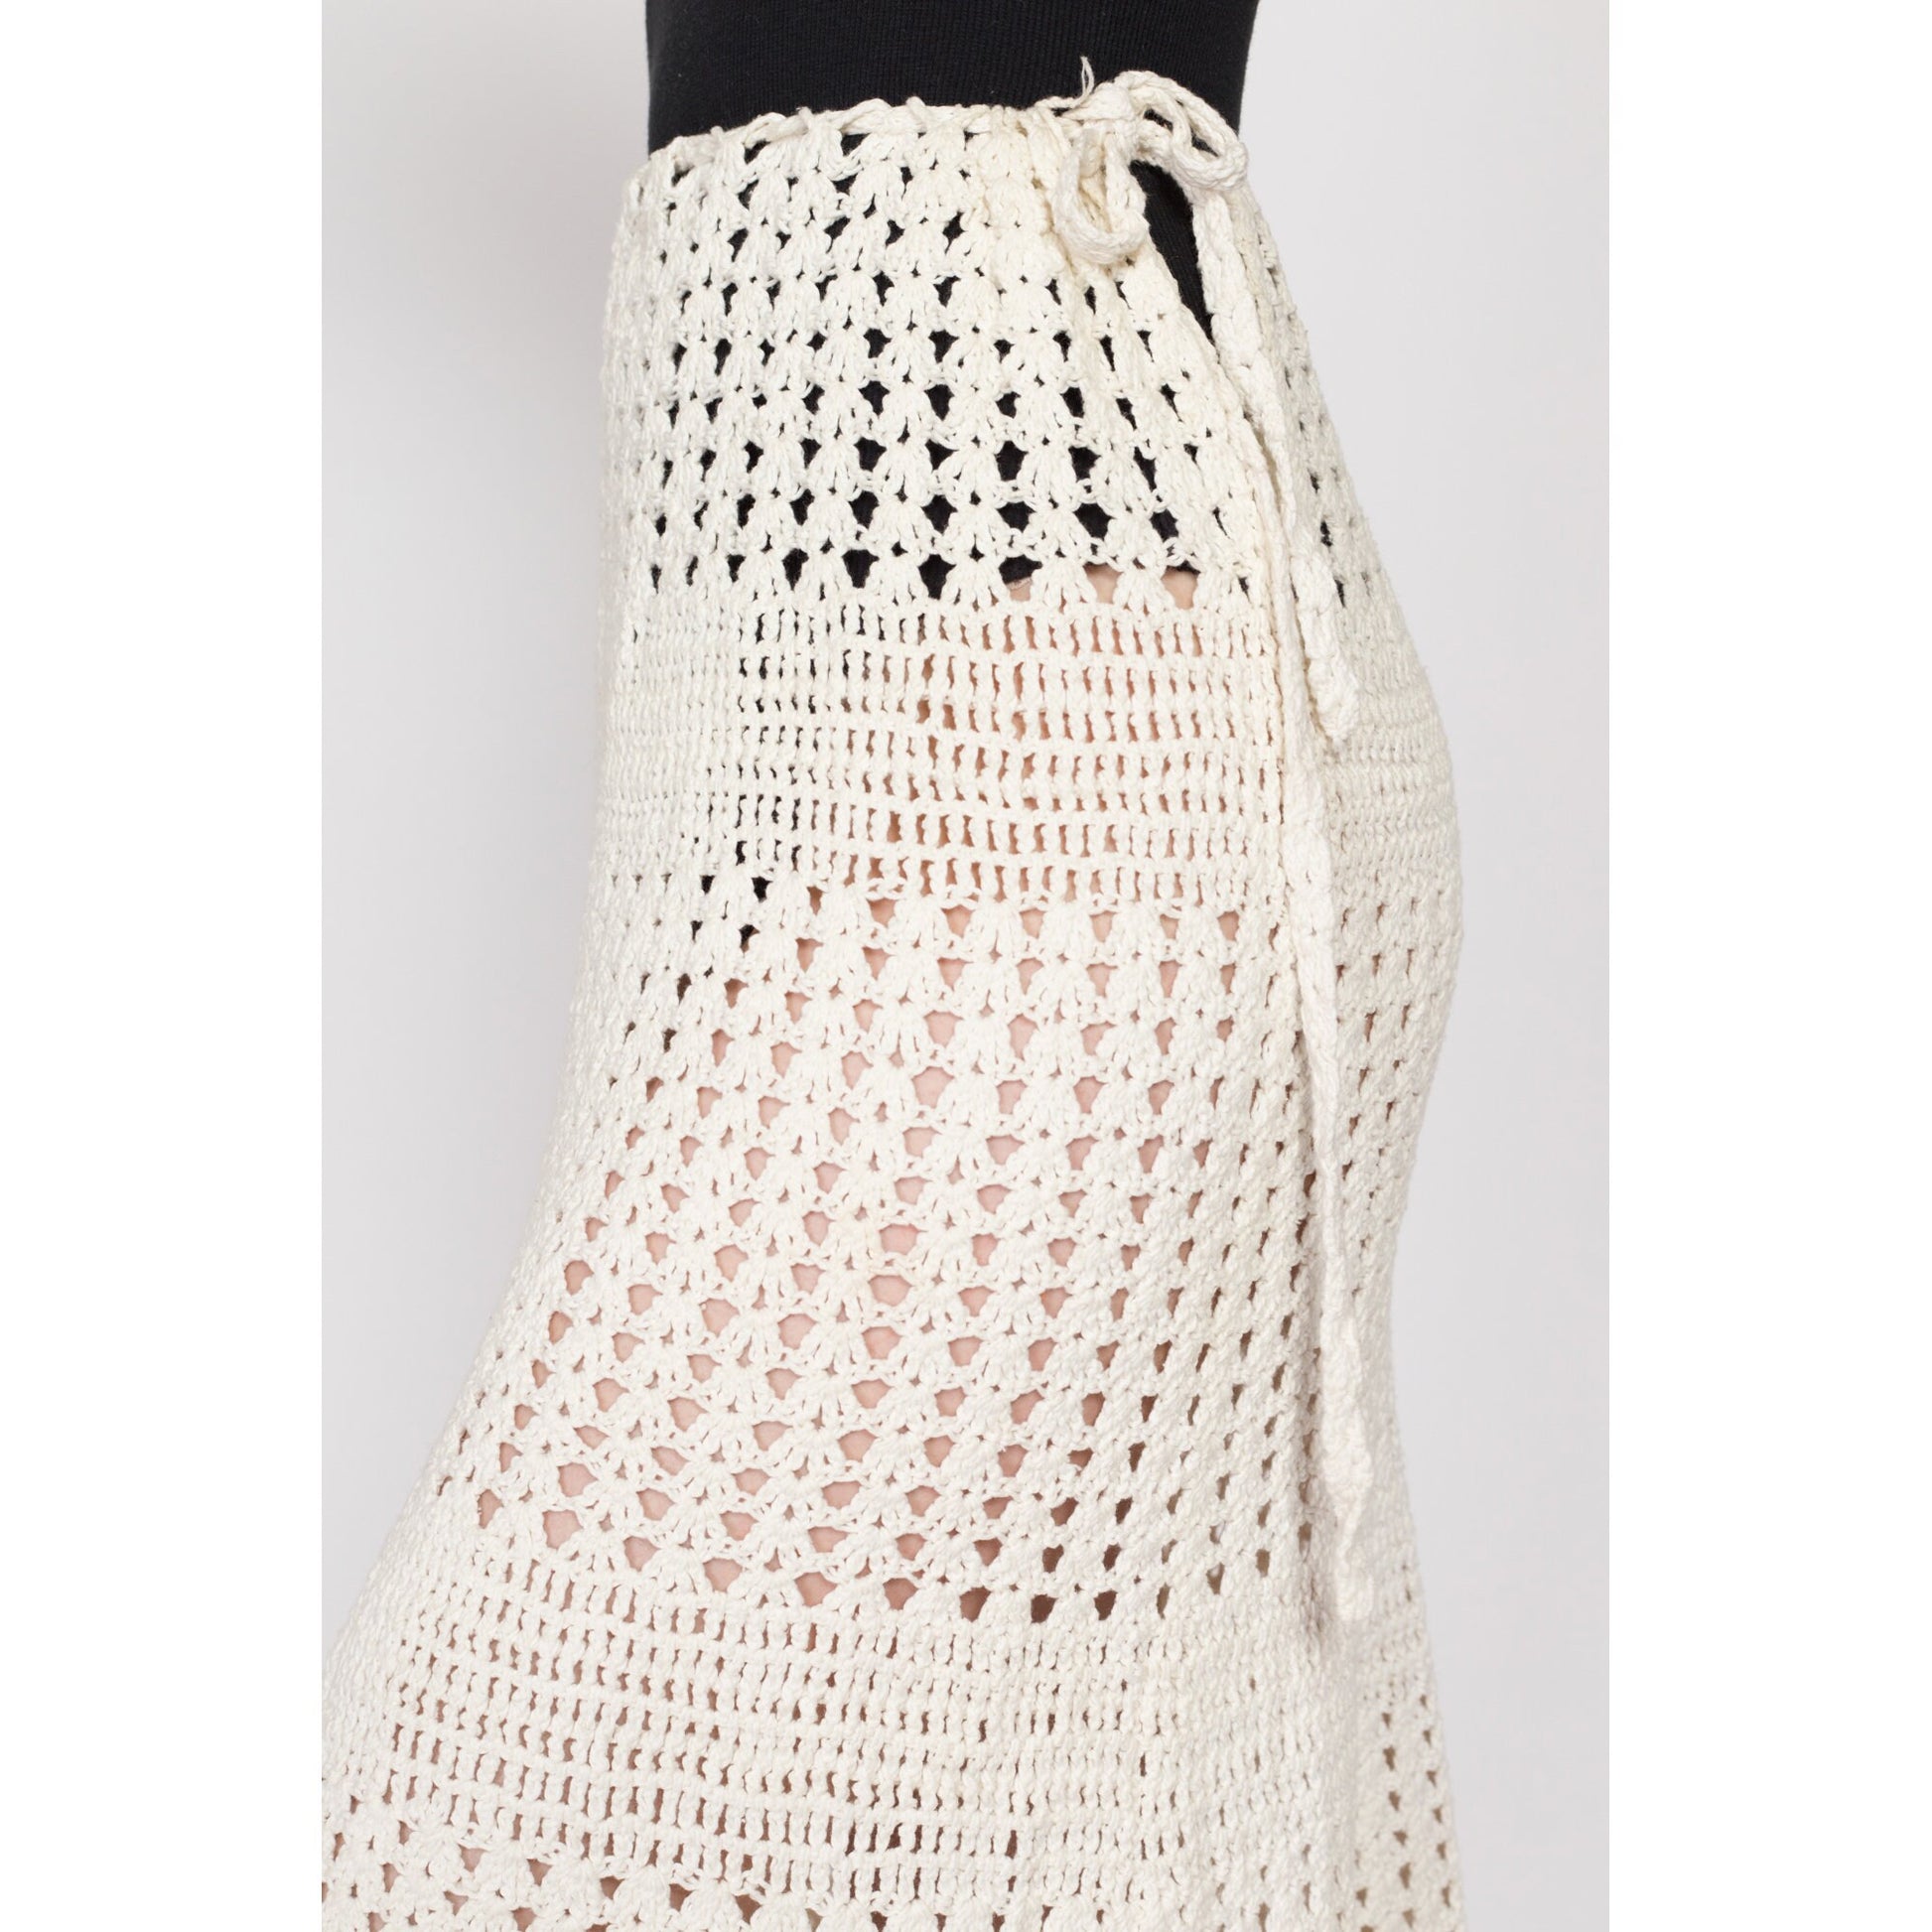 XS-Sm 70s Boho Sheer Crochet Midi Skirt | Vintage Cream White Hippie Skirt